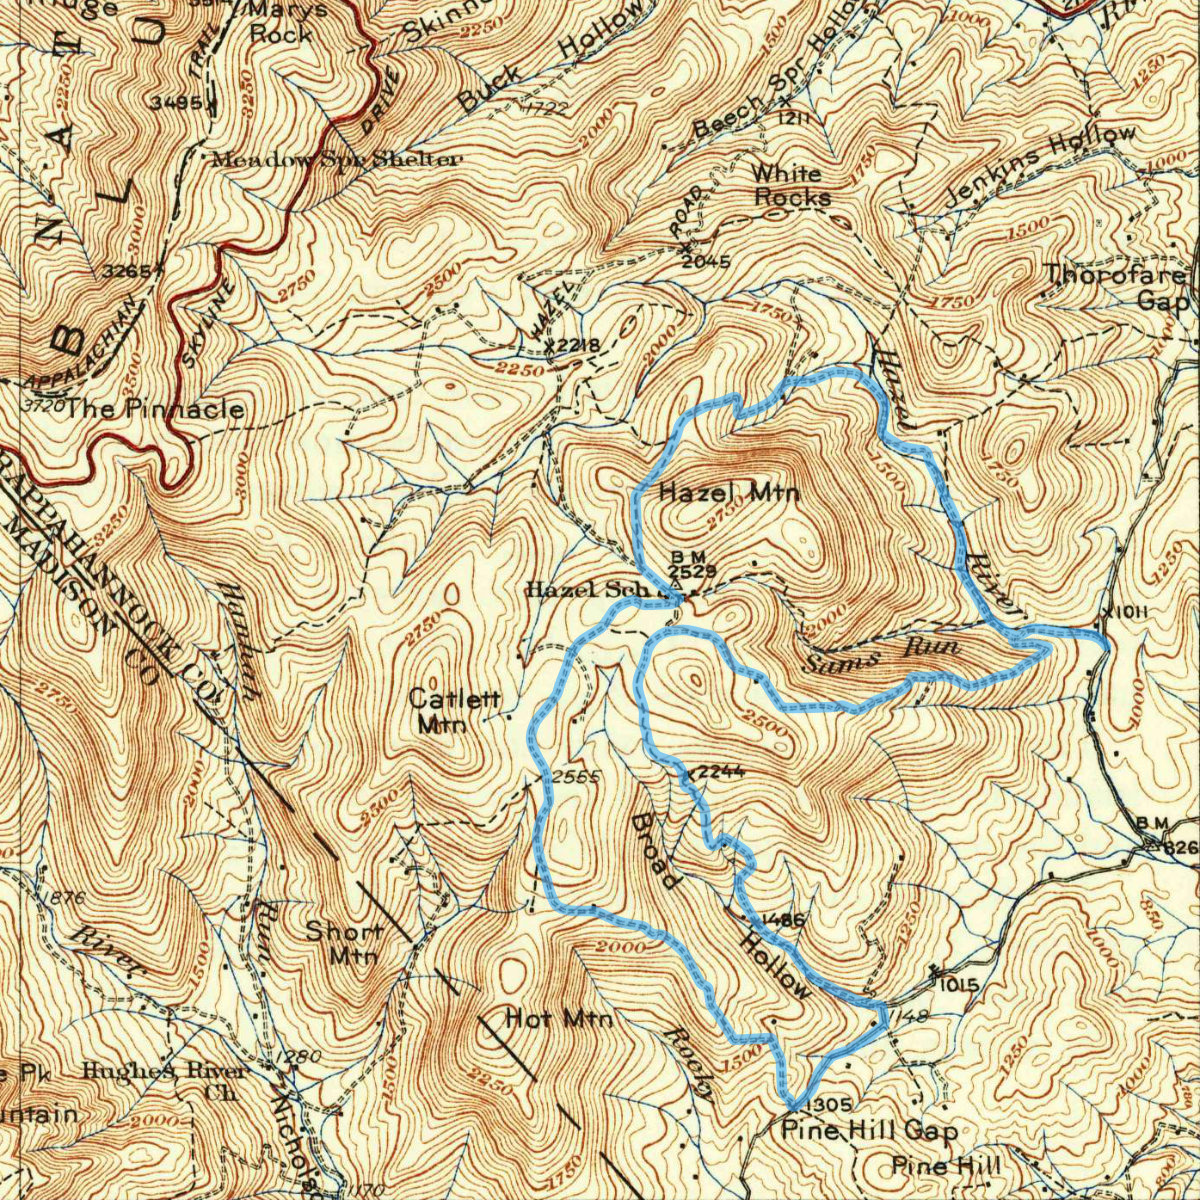 A 1933 map showing Hazel School